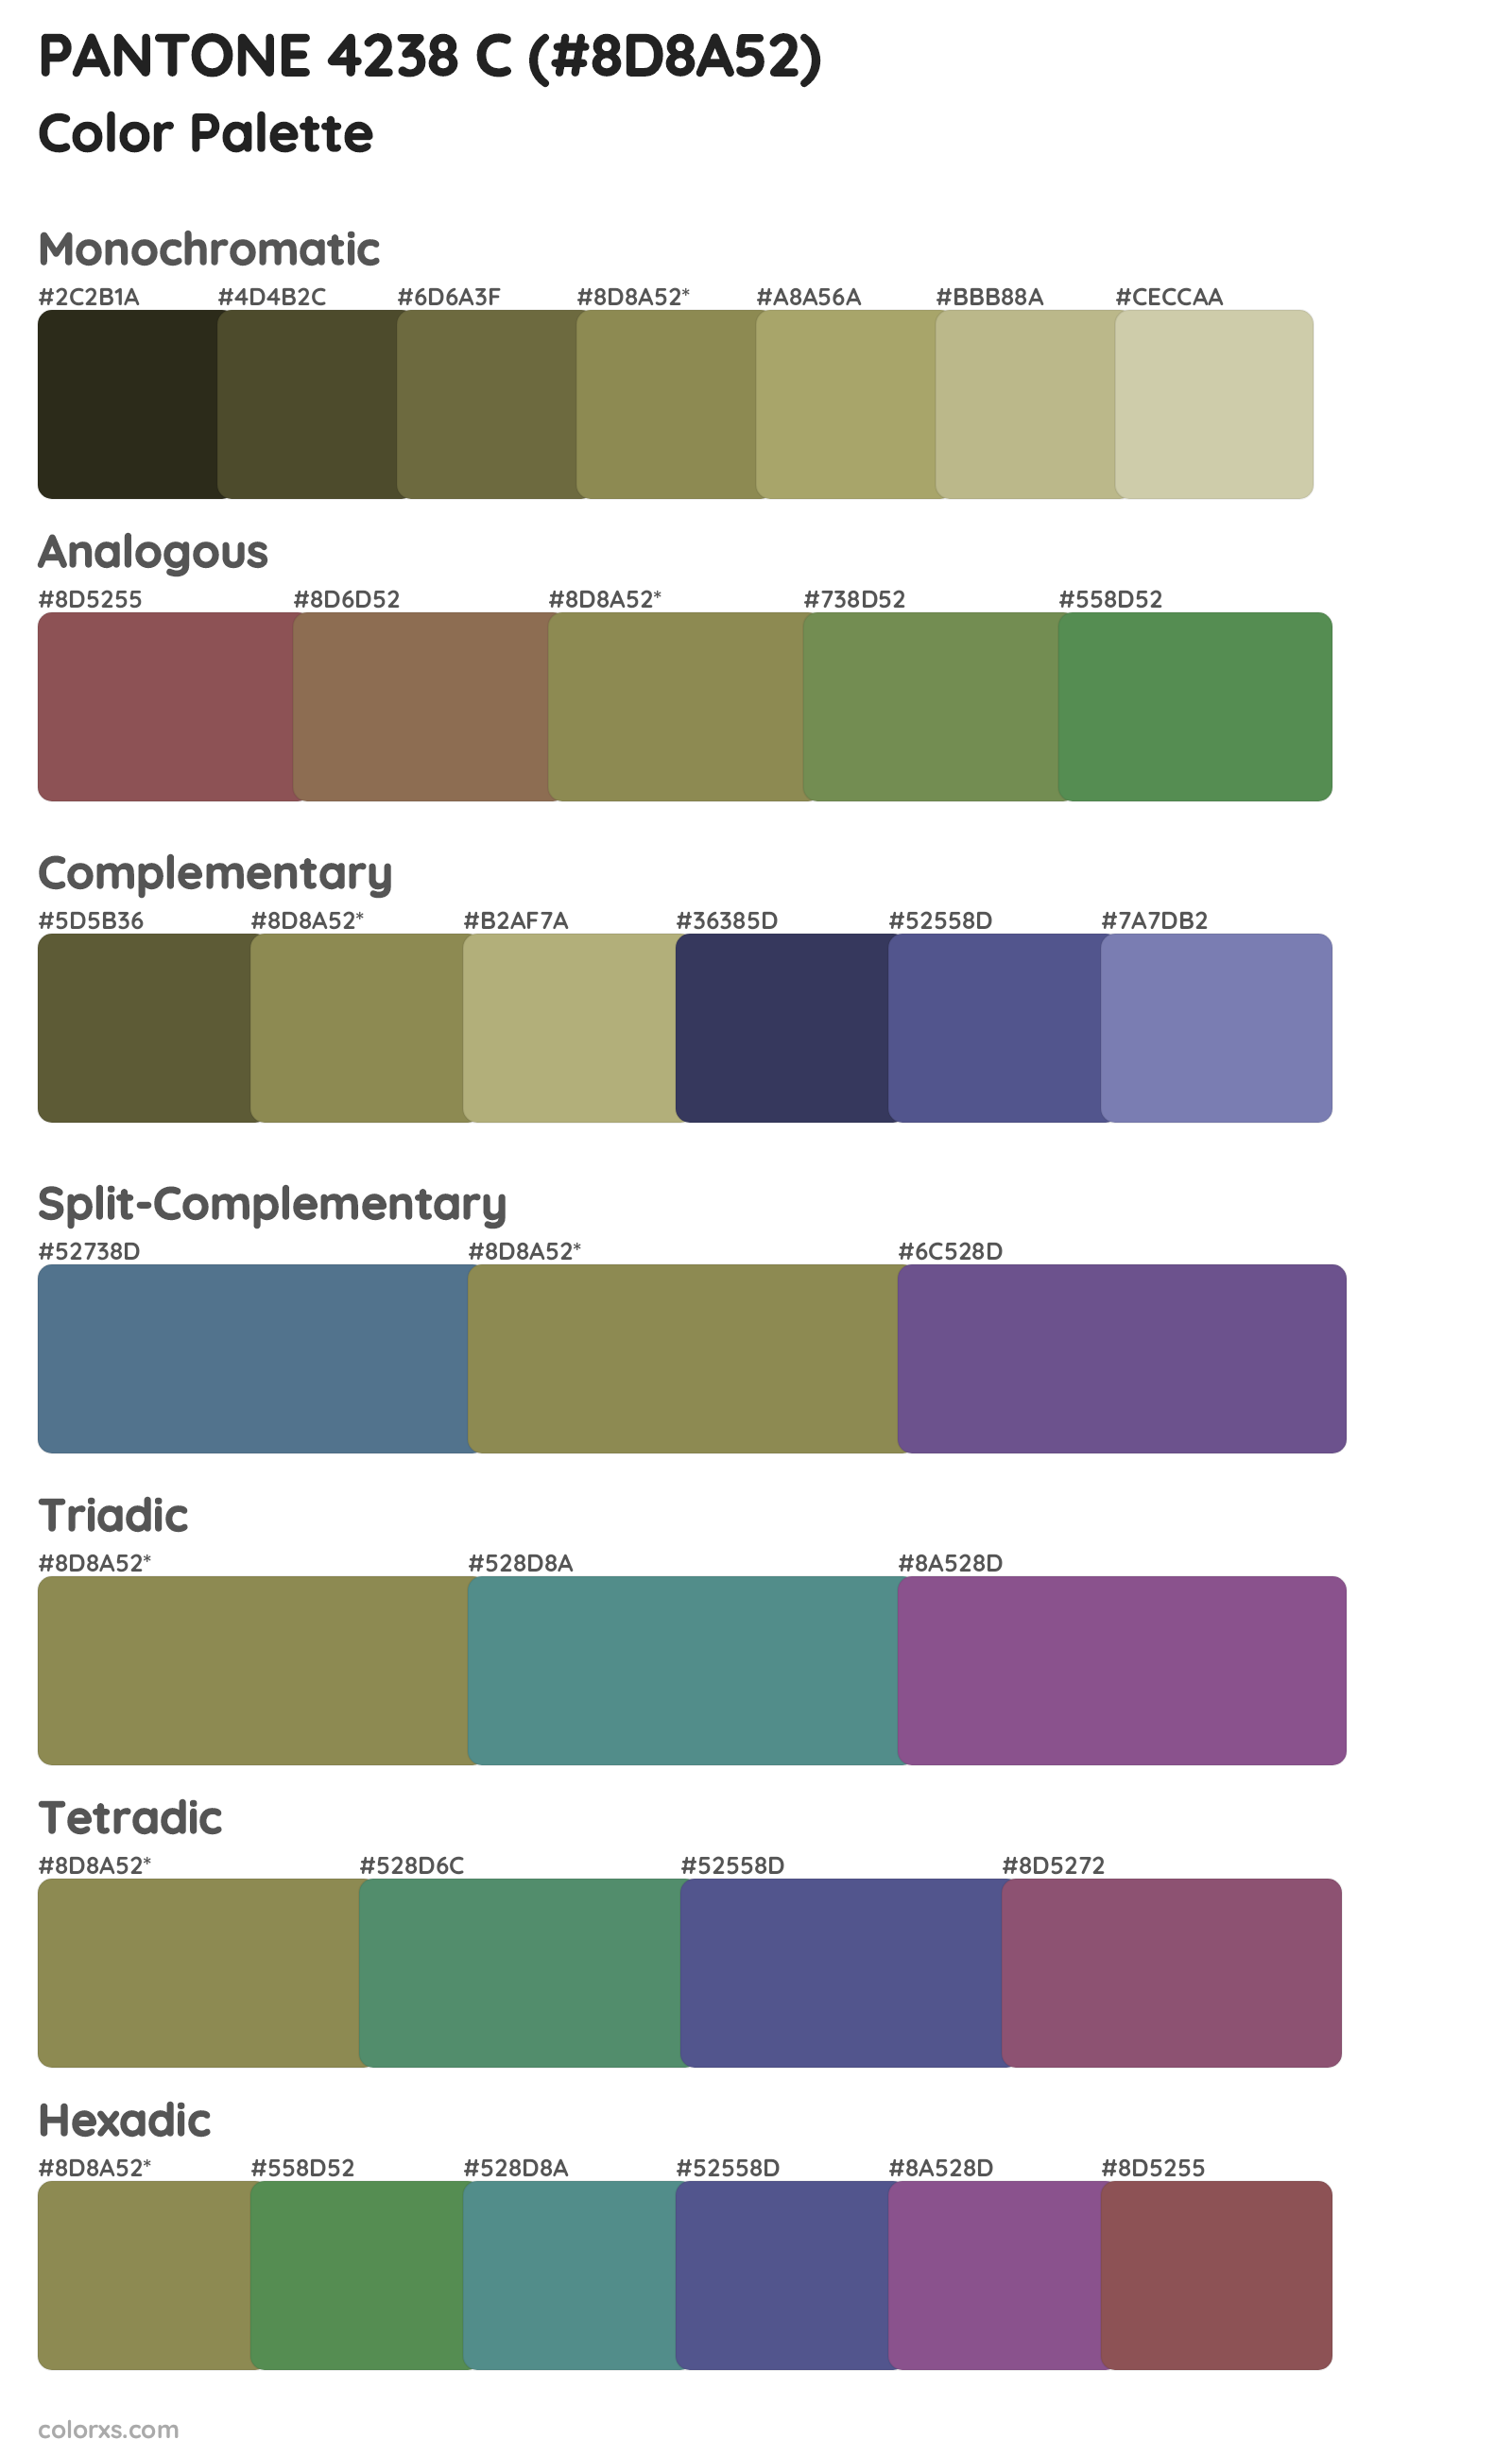 PANTONE 4238 C Color Scheme Palettes